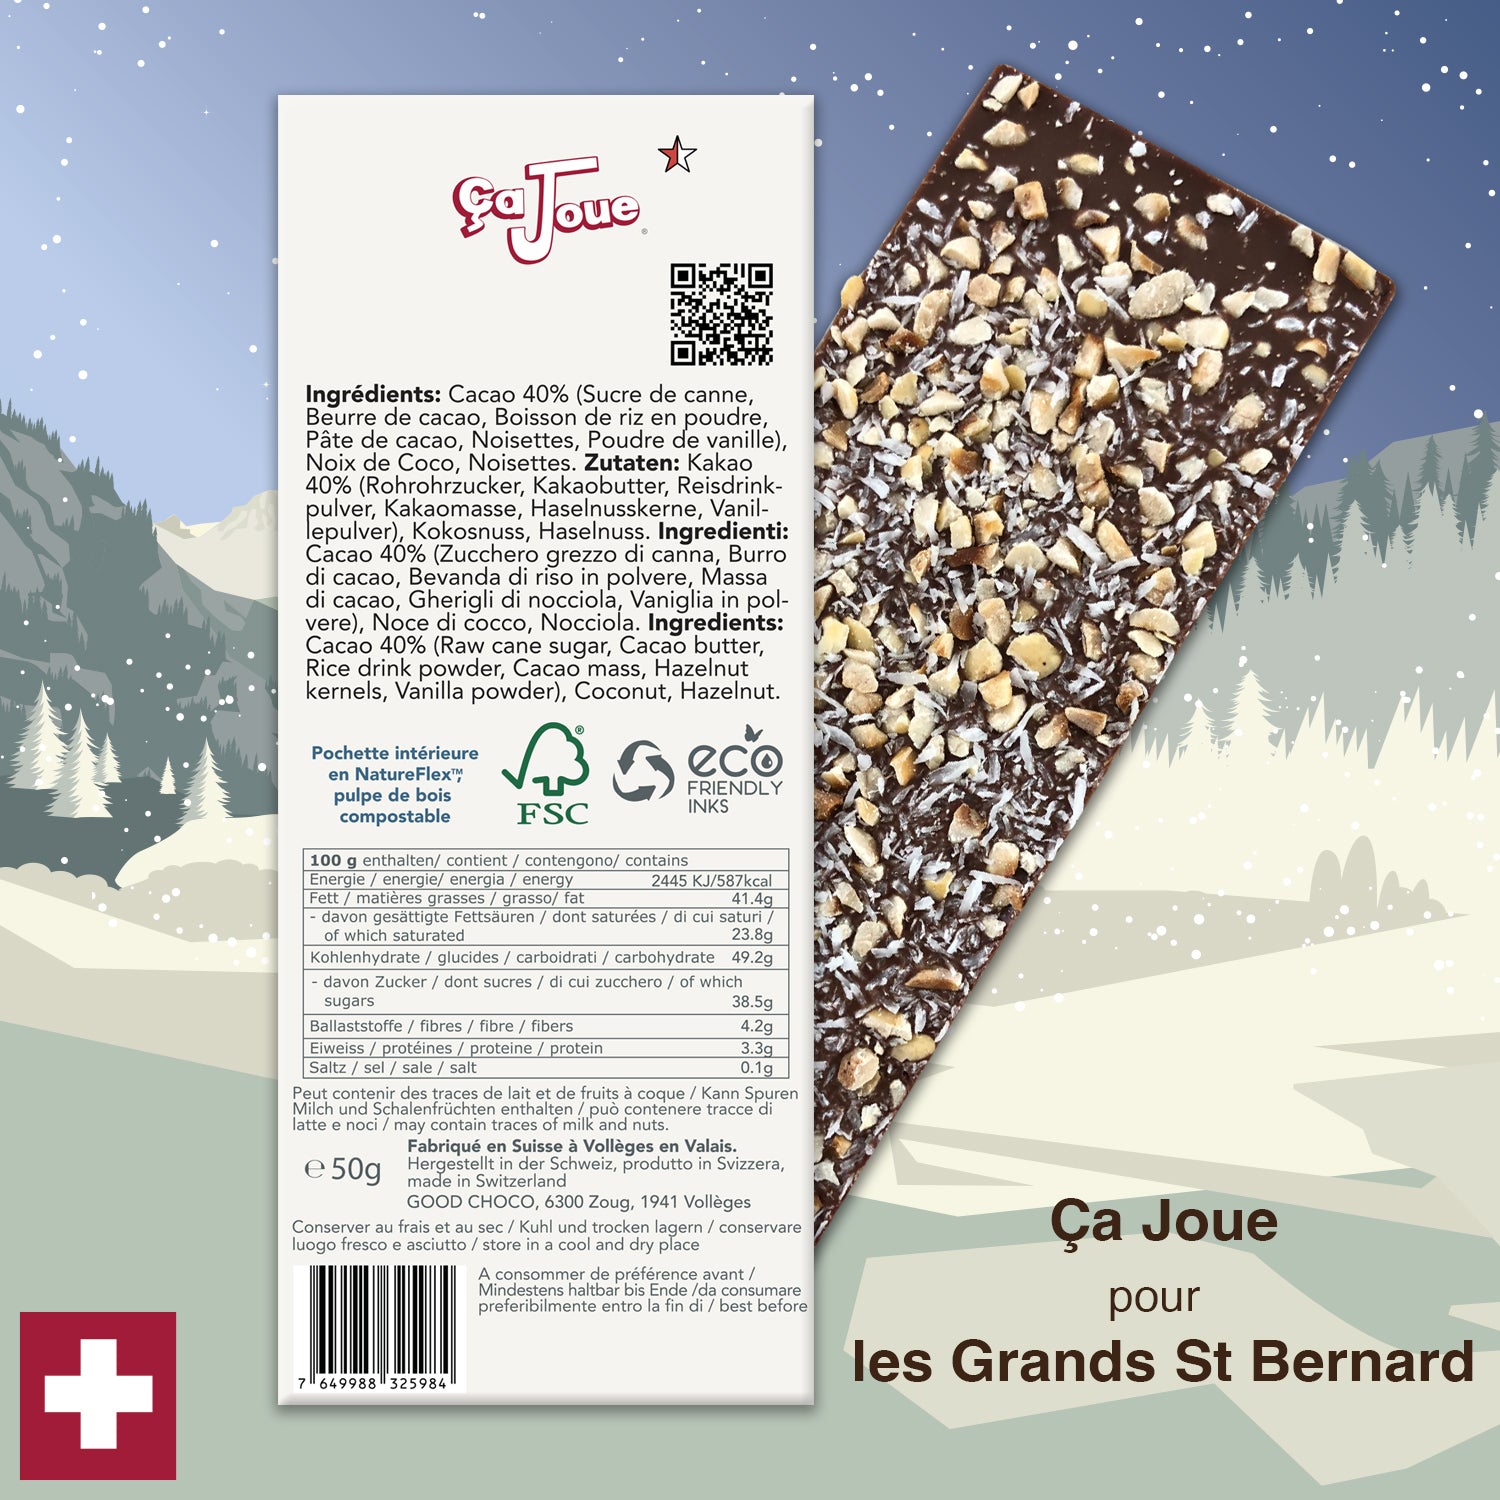 Ça Joue pour les grands St Bernard (Ref-N12) Chocolat du Val de Bagnes